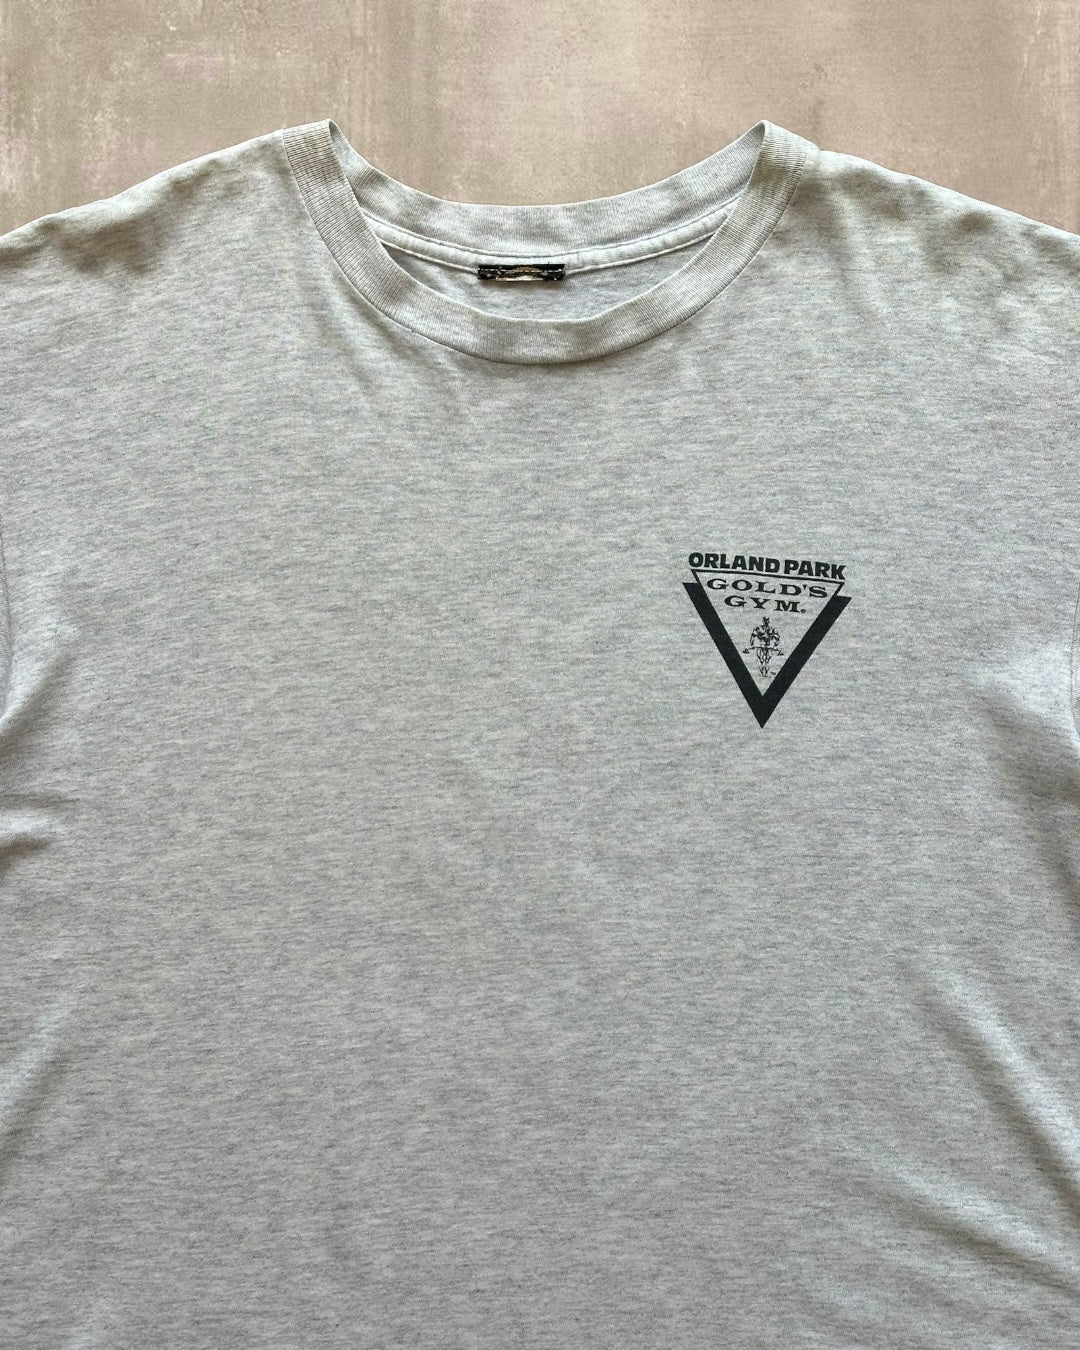 90s Gold’s Gym T-Shirt - XL